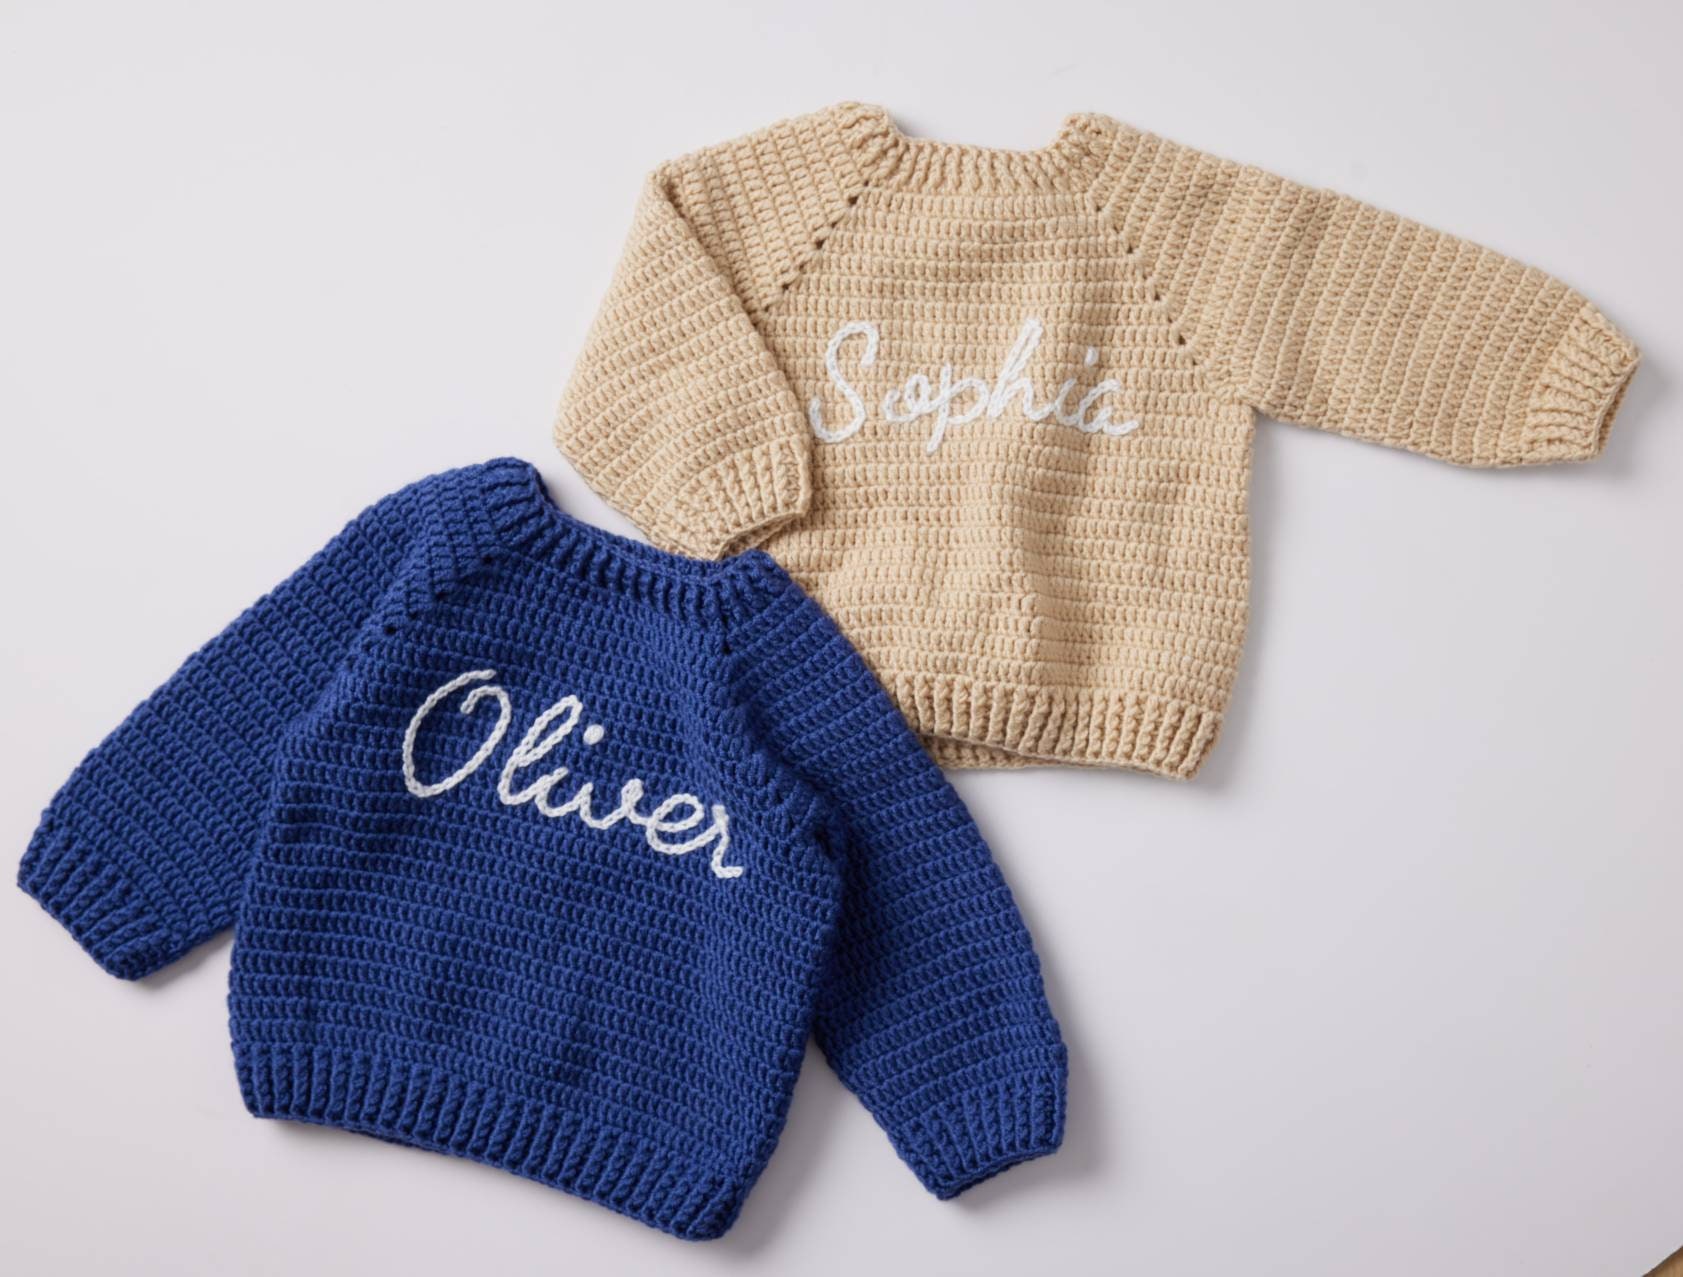 Custom Knit Pullover Name Sweater for Baby and Kids Kleding Jongenskleding Sweaters 